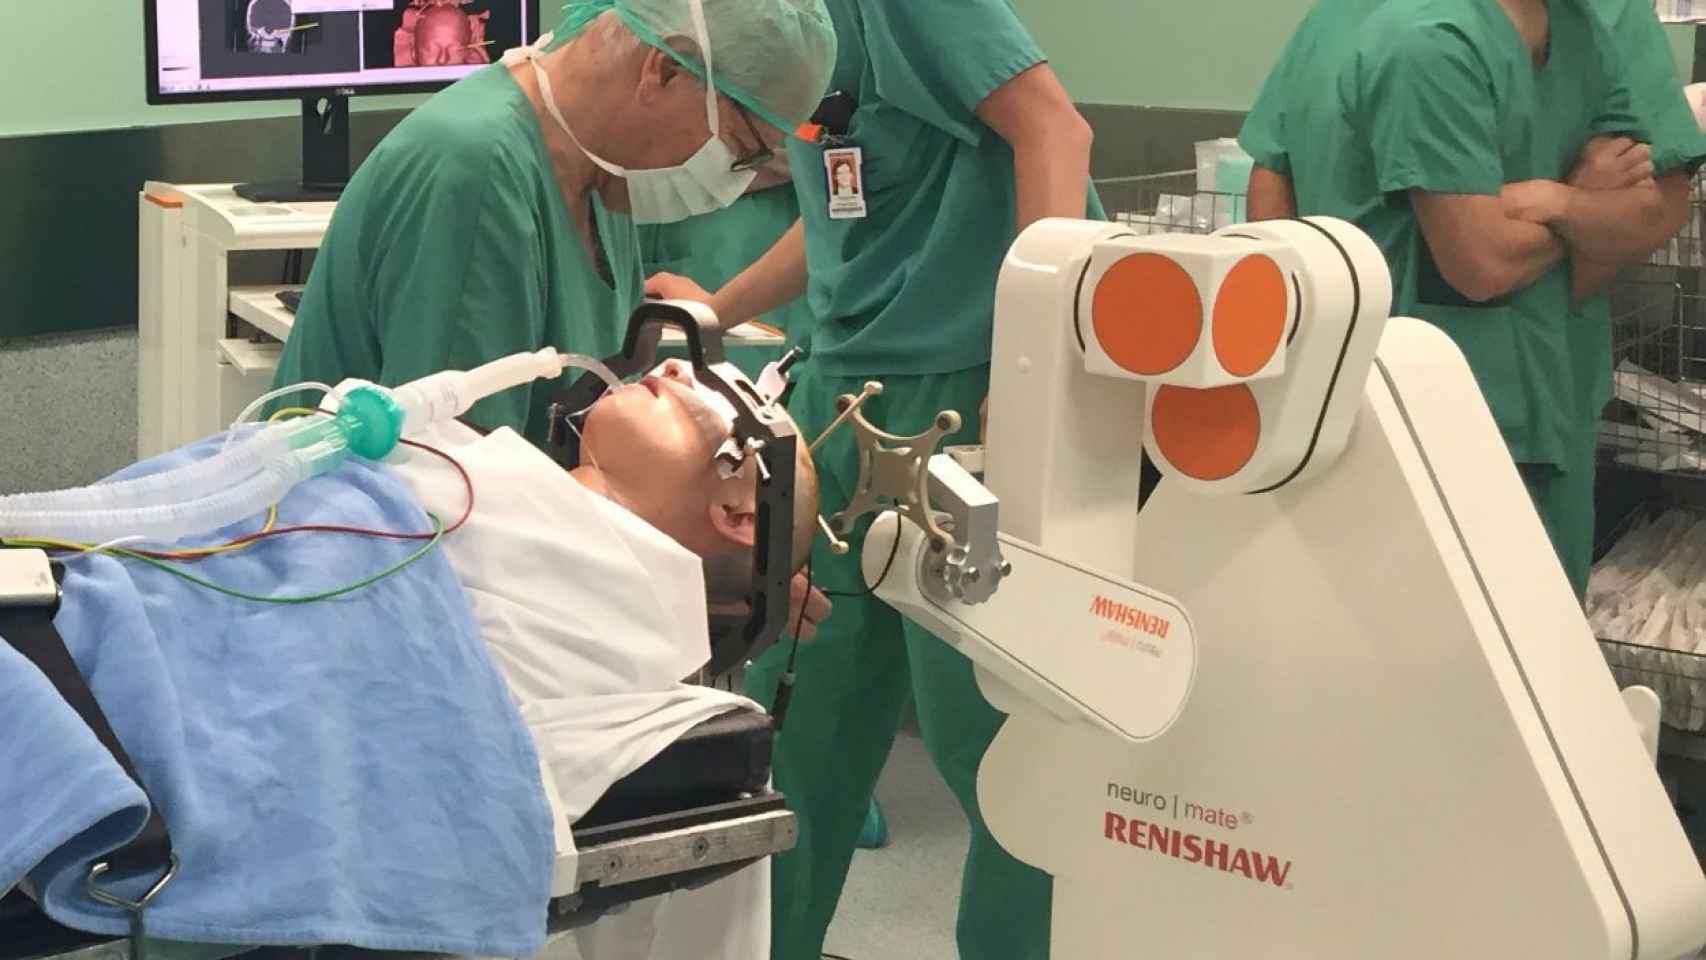 El robot Renishaw se utiliza para cirugías relacionadas con la epilepsia o el parkinson / Quirónsalud